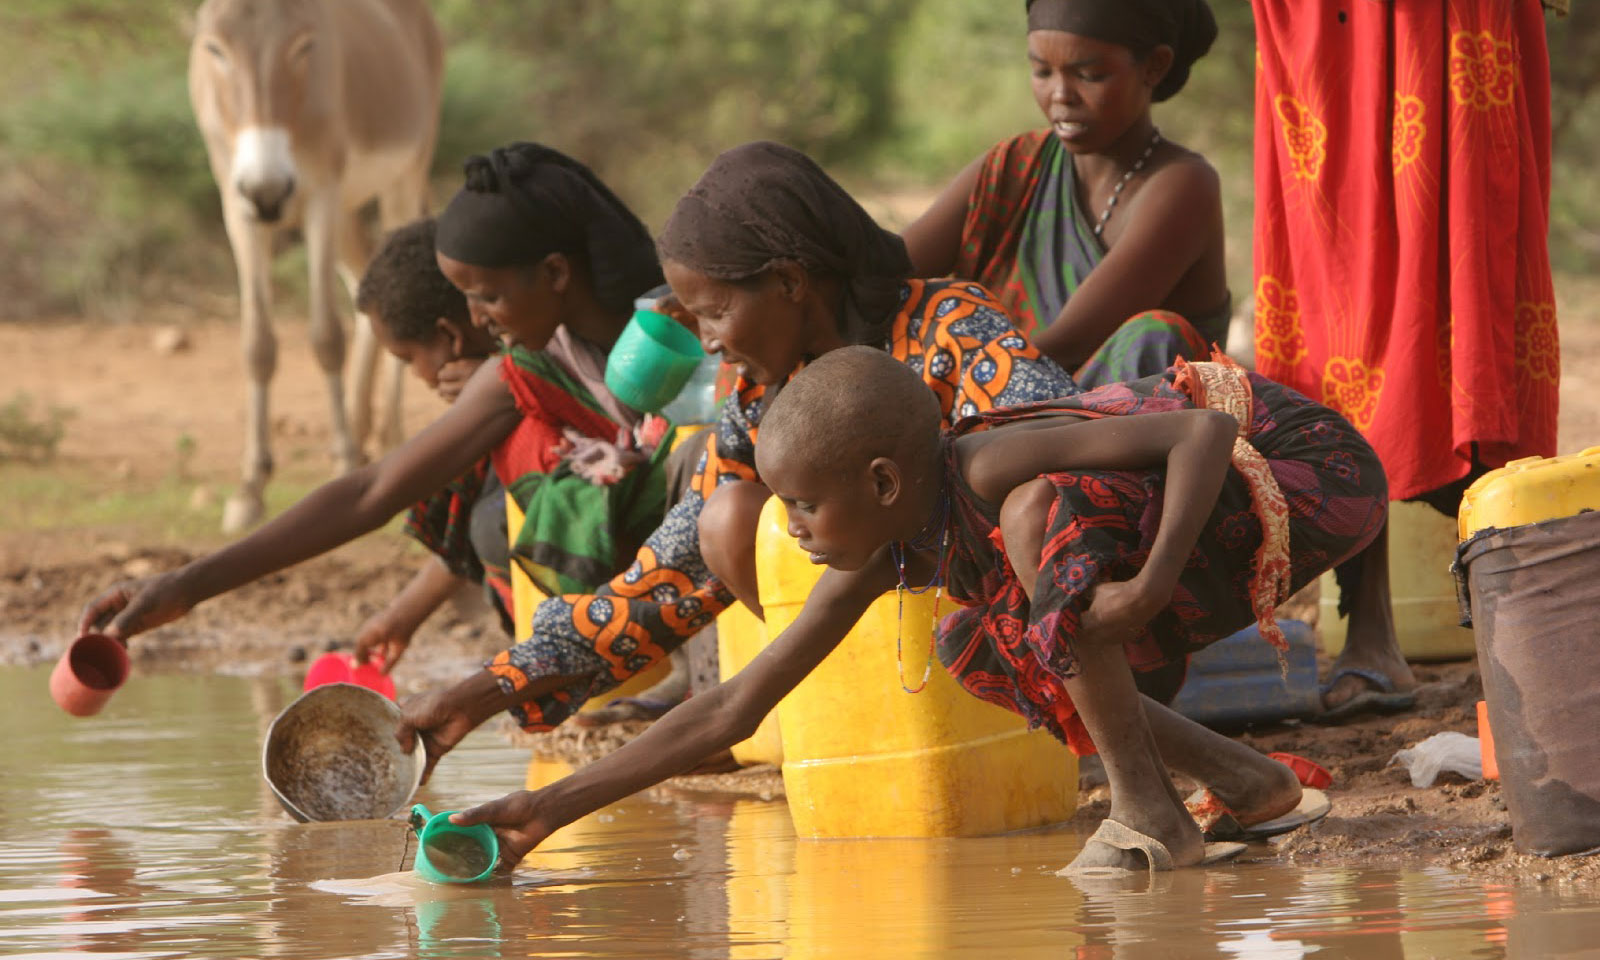  Por falta de fondos, ONU se ve obligada a cortar alimentos de 1.3 millones de niños en África